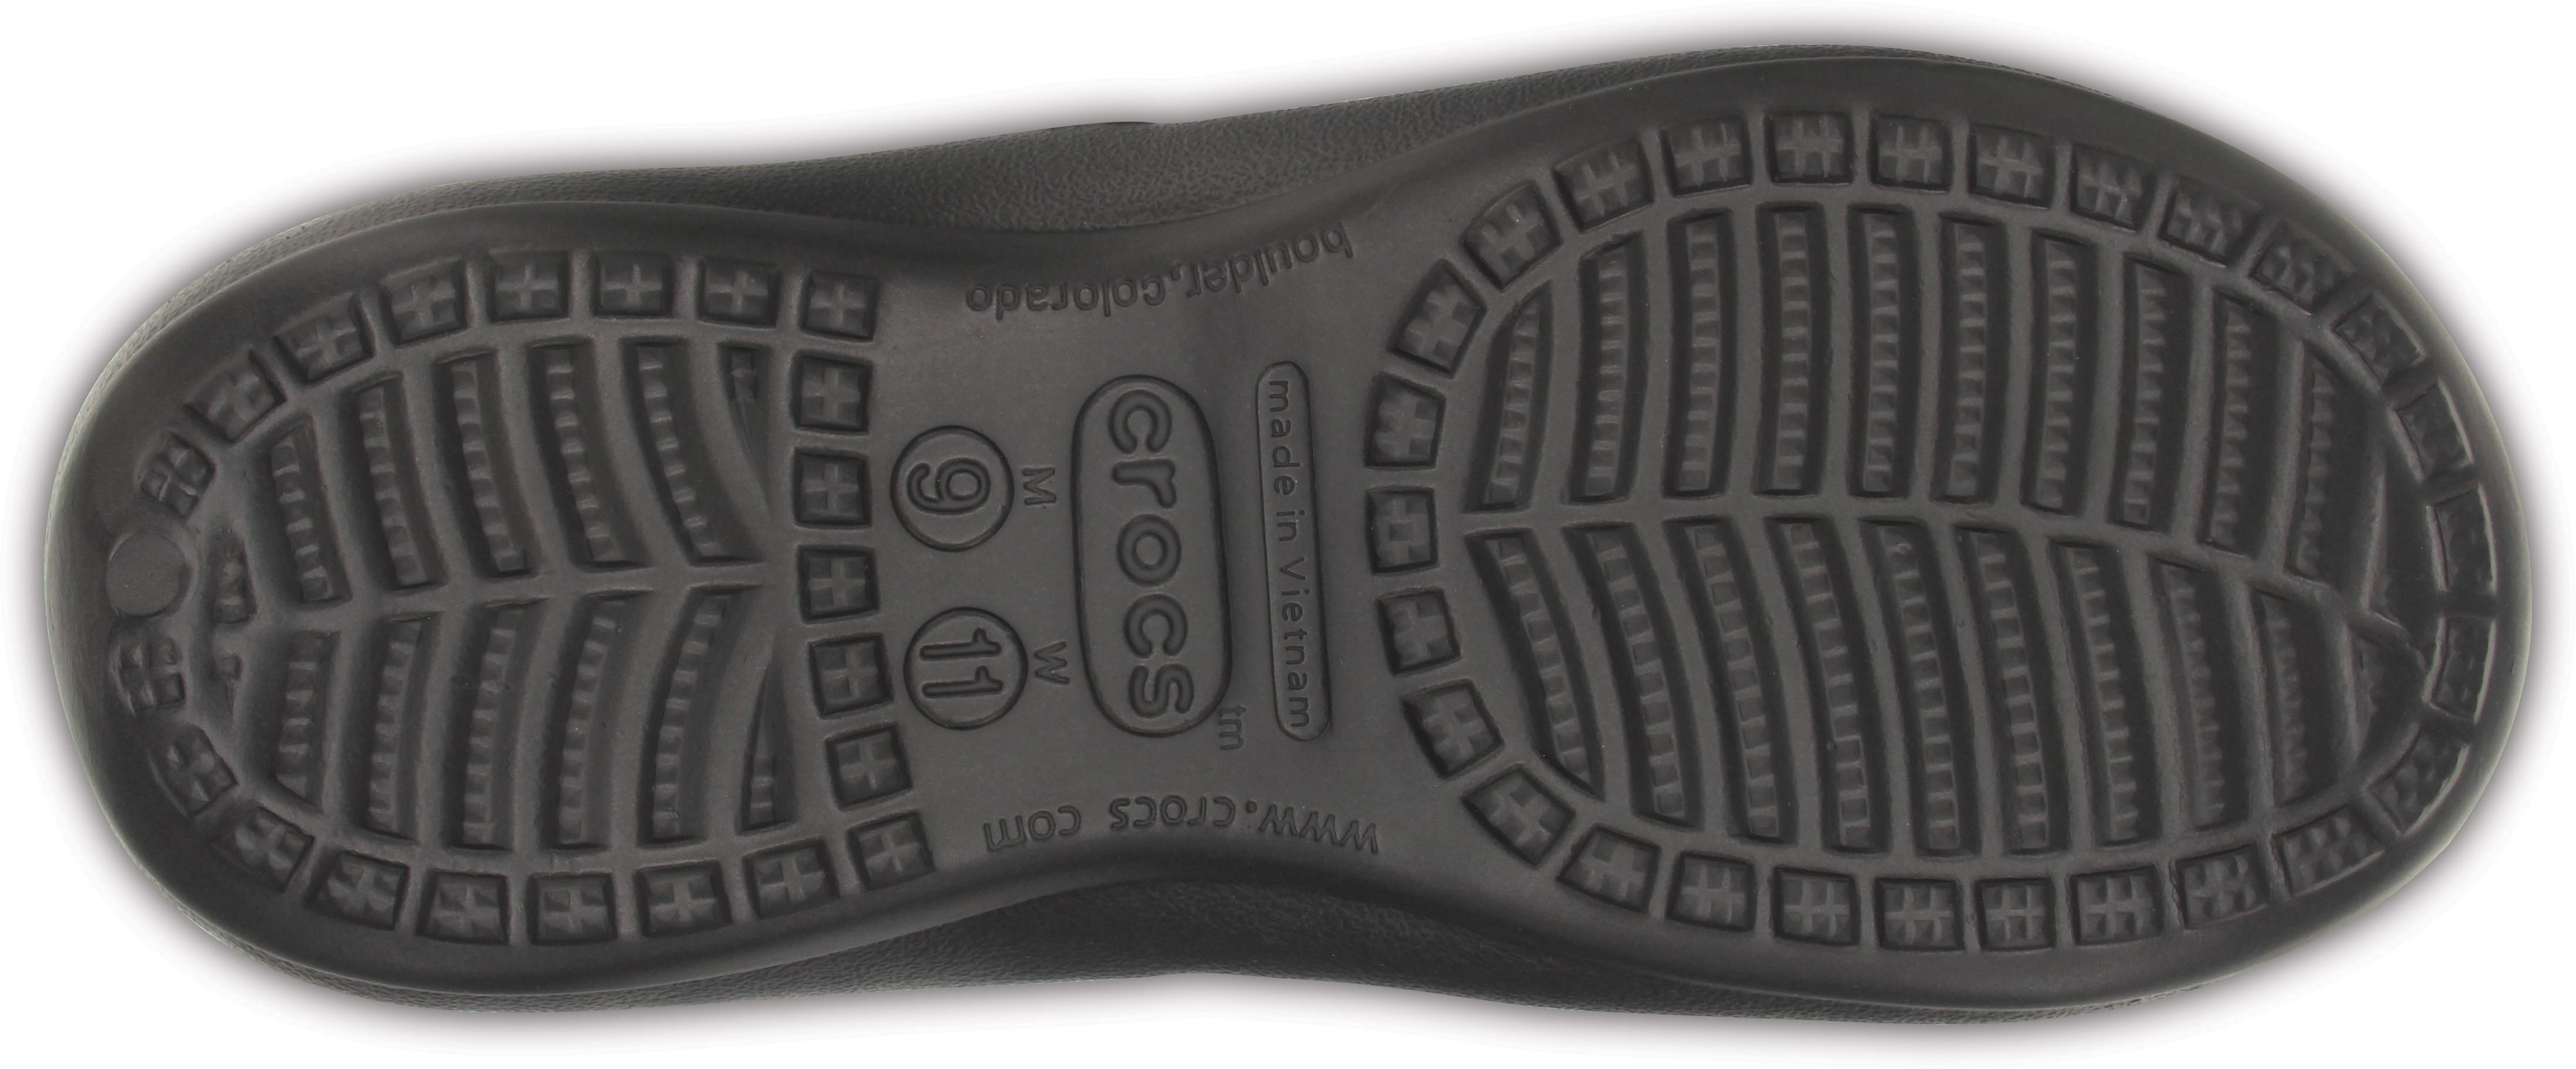 crocs model footwear